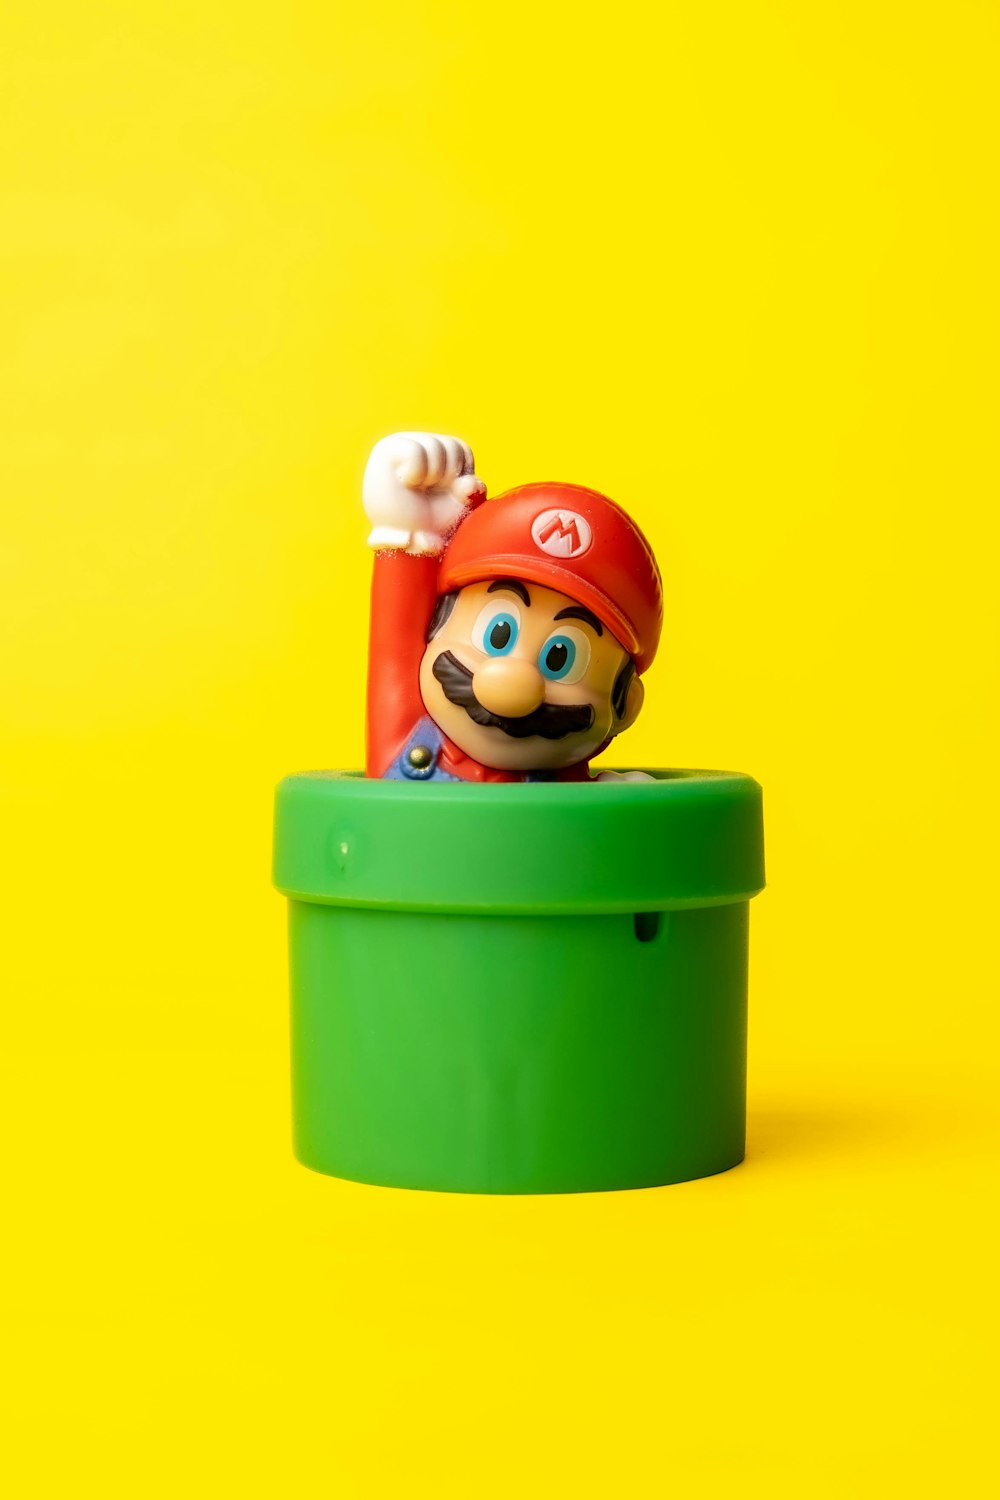 Ein Spielzeug-Mario in einem grünen Behälter auf gelbem Hintergrund